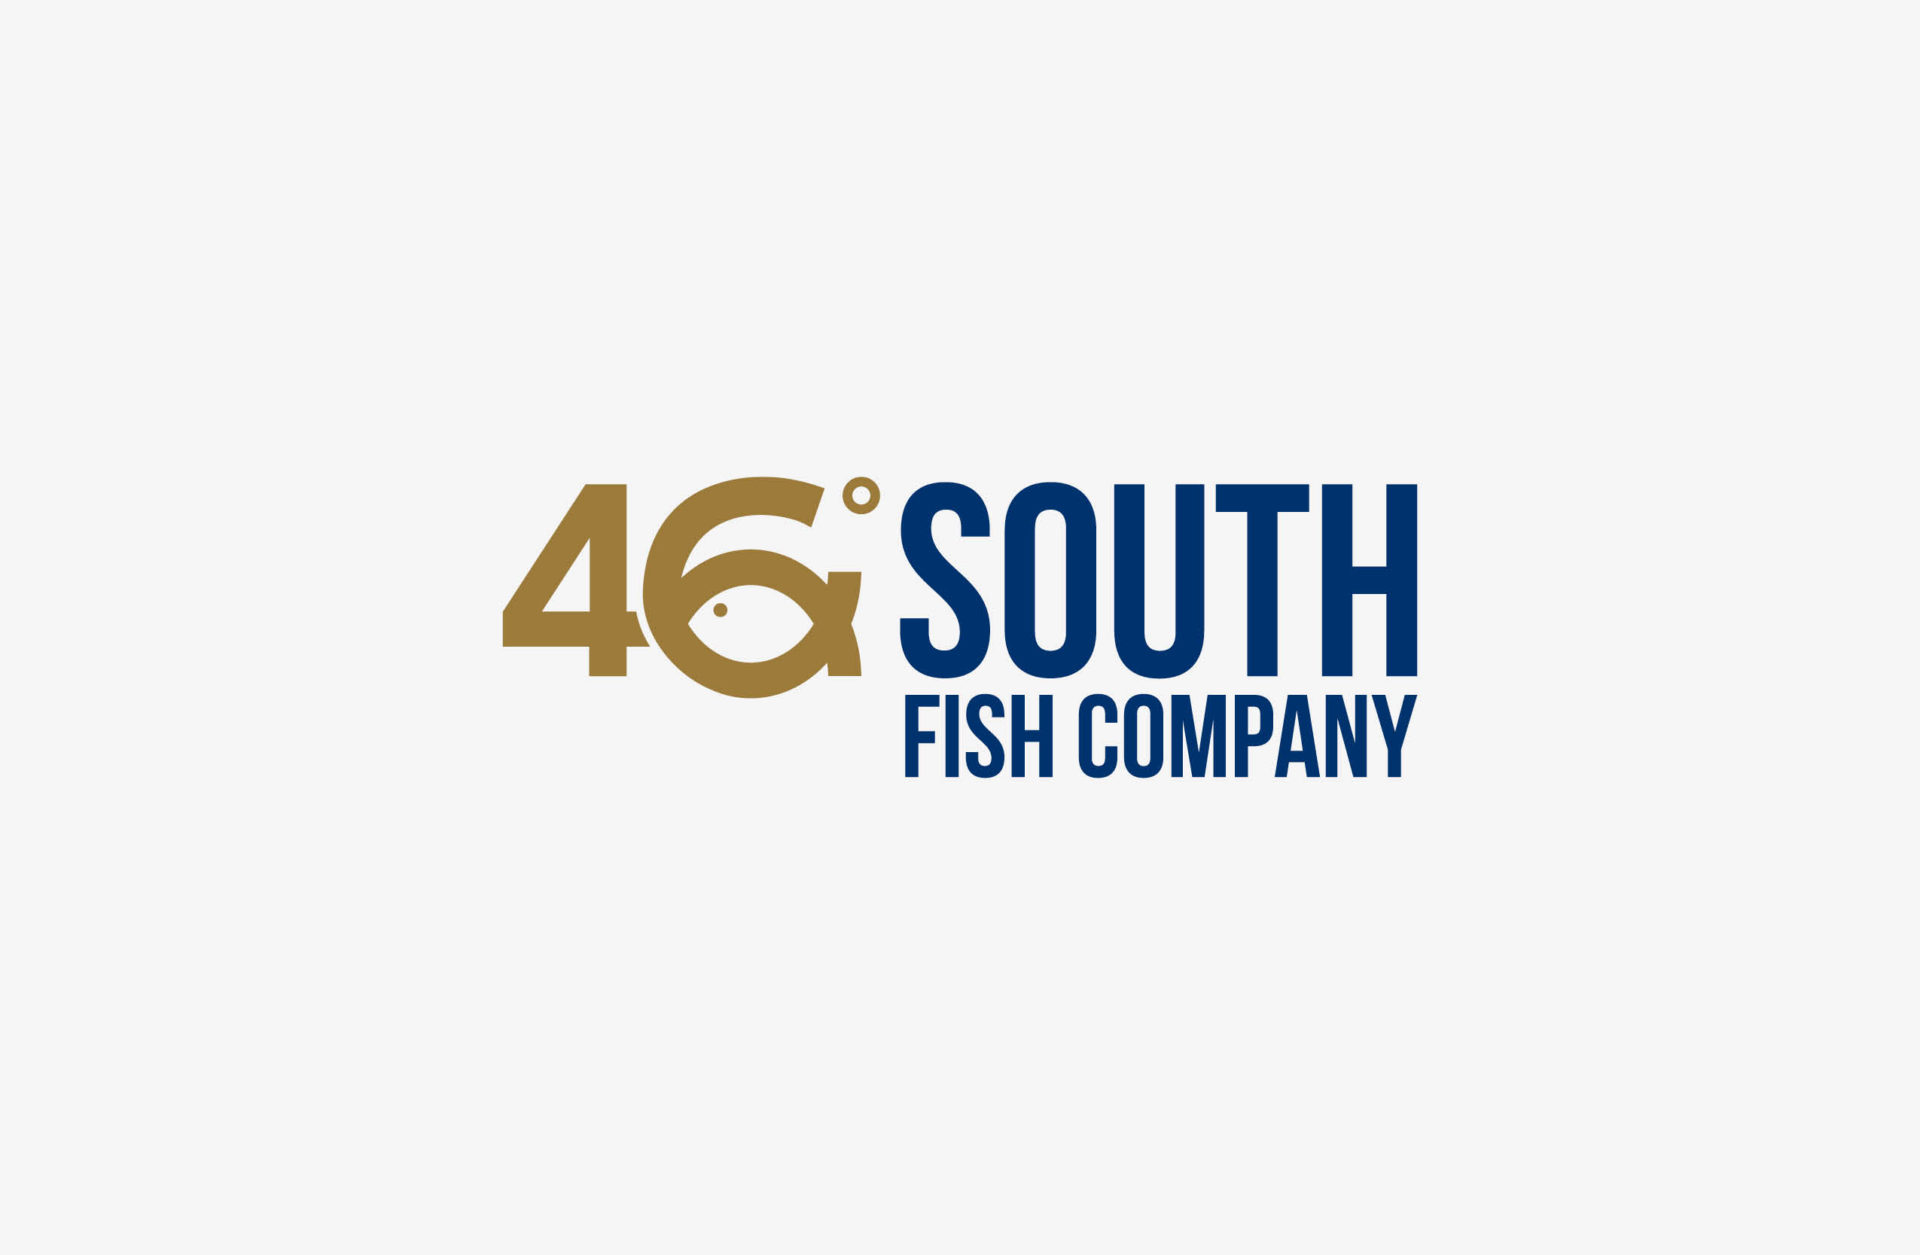 46 South Fish Company logo